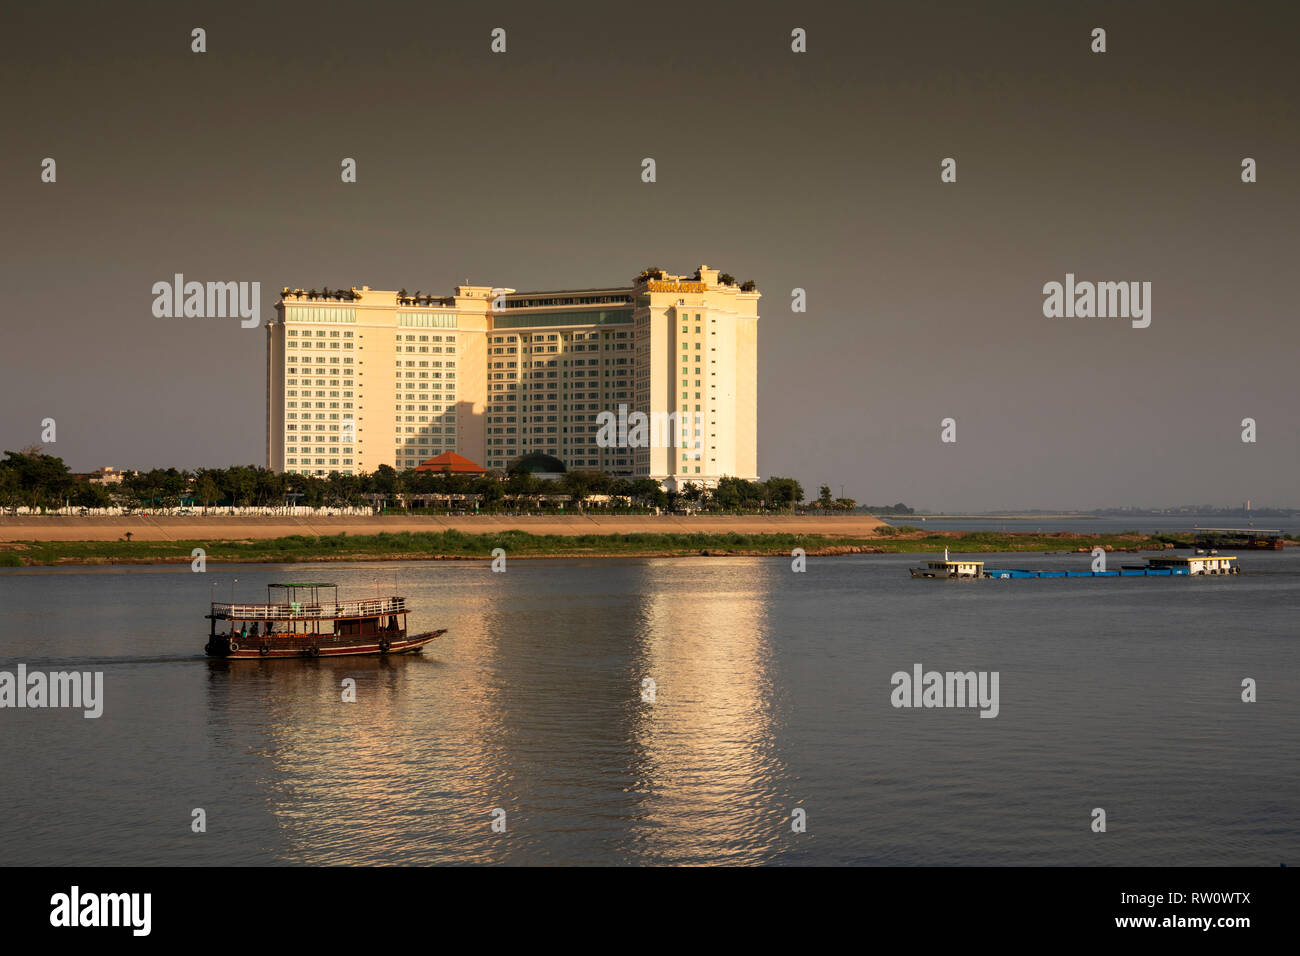 Kambodscha, Phnom Penh, Stadtzentrum, Sokha Phnom Penh Hotel und Residenz am Zusammenfluss von Tonle Sap und Mekong Fluss, am späten Nachmittag Stockfoto